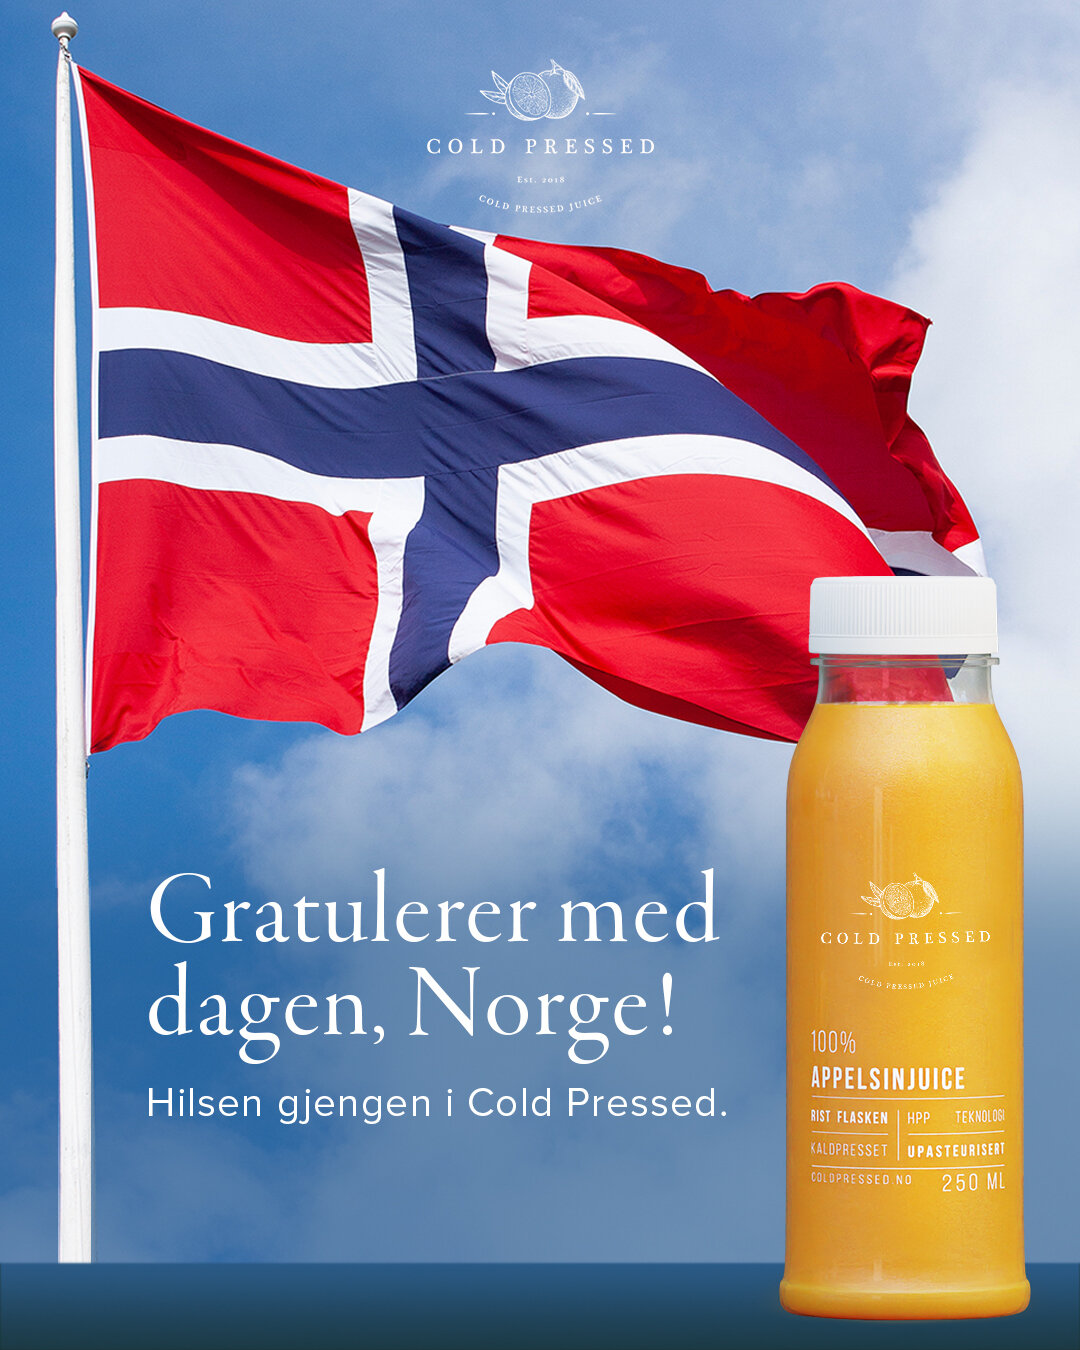 Gratulerer med dagen, Norge 🇧🇻 

Vi &oslash;nsker alle en str&aring;lende dag! 

Hilsen alle oss i Cold Pressed-gjengen 🍎 

#coldpresedjuice #coldpressed #juice #lemonjuice #limejuice #orangejuice #greenjuice #sitronjuice #appelsinjuice #kaldtpres